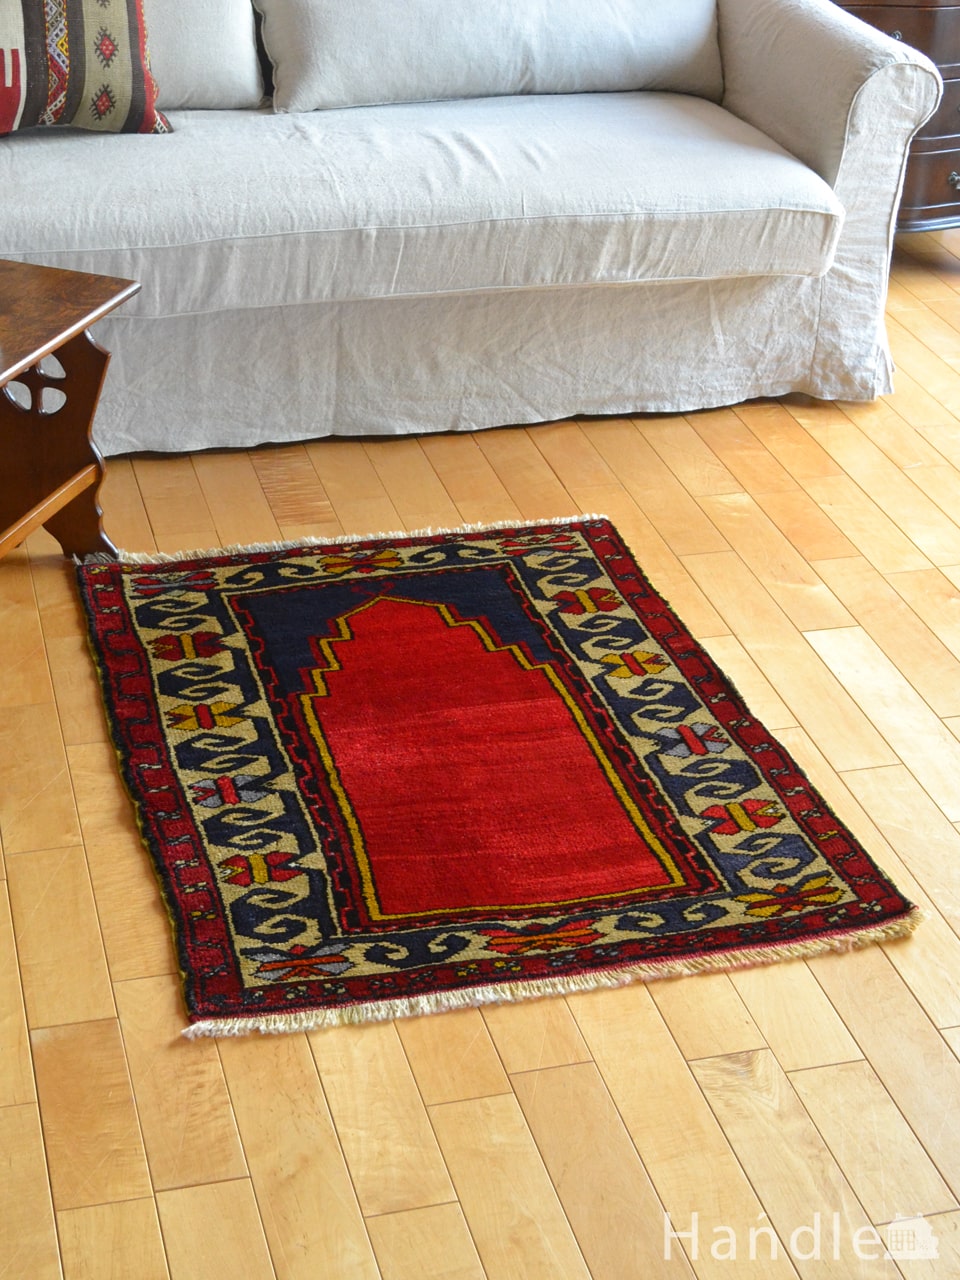 トルココンヤのおしゃれな絨毯、1点もののビンテージのトライバルラグ (m-5071-z)